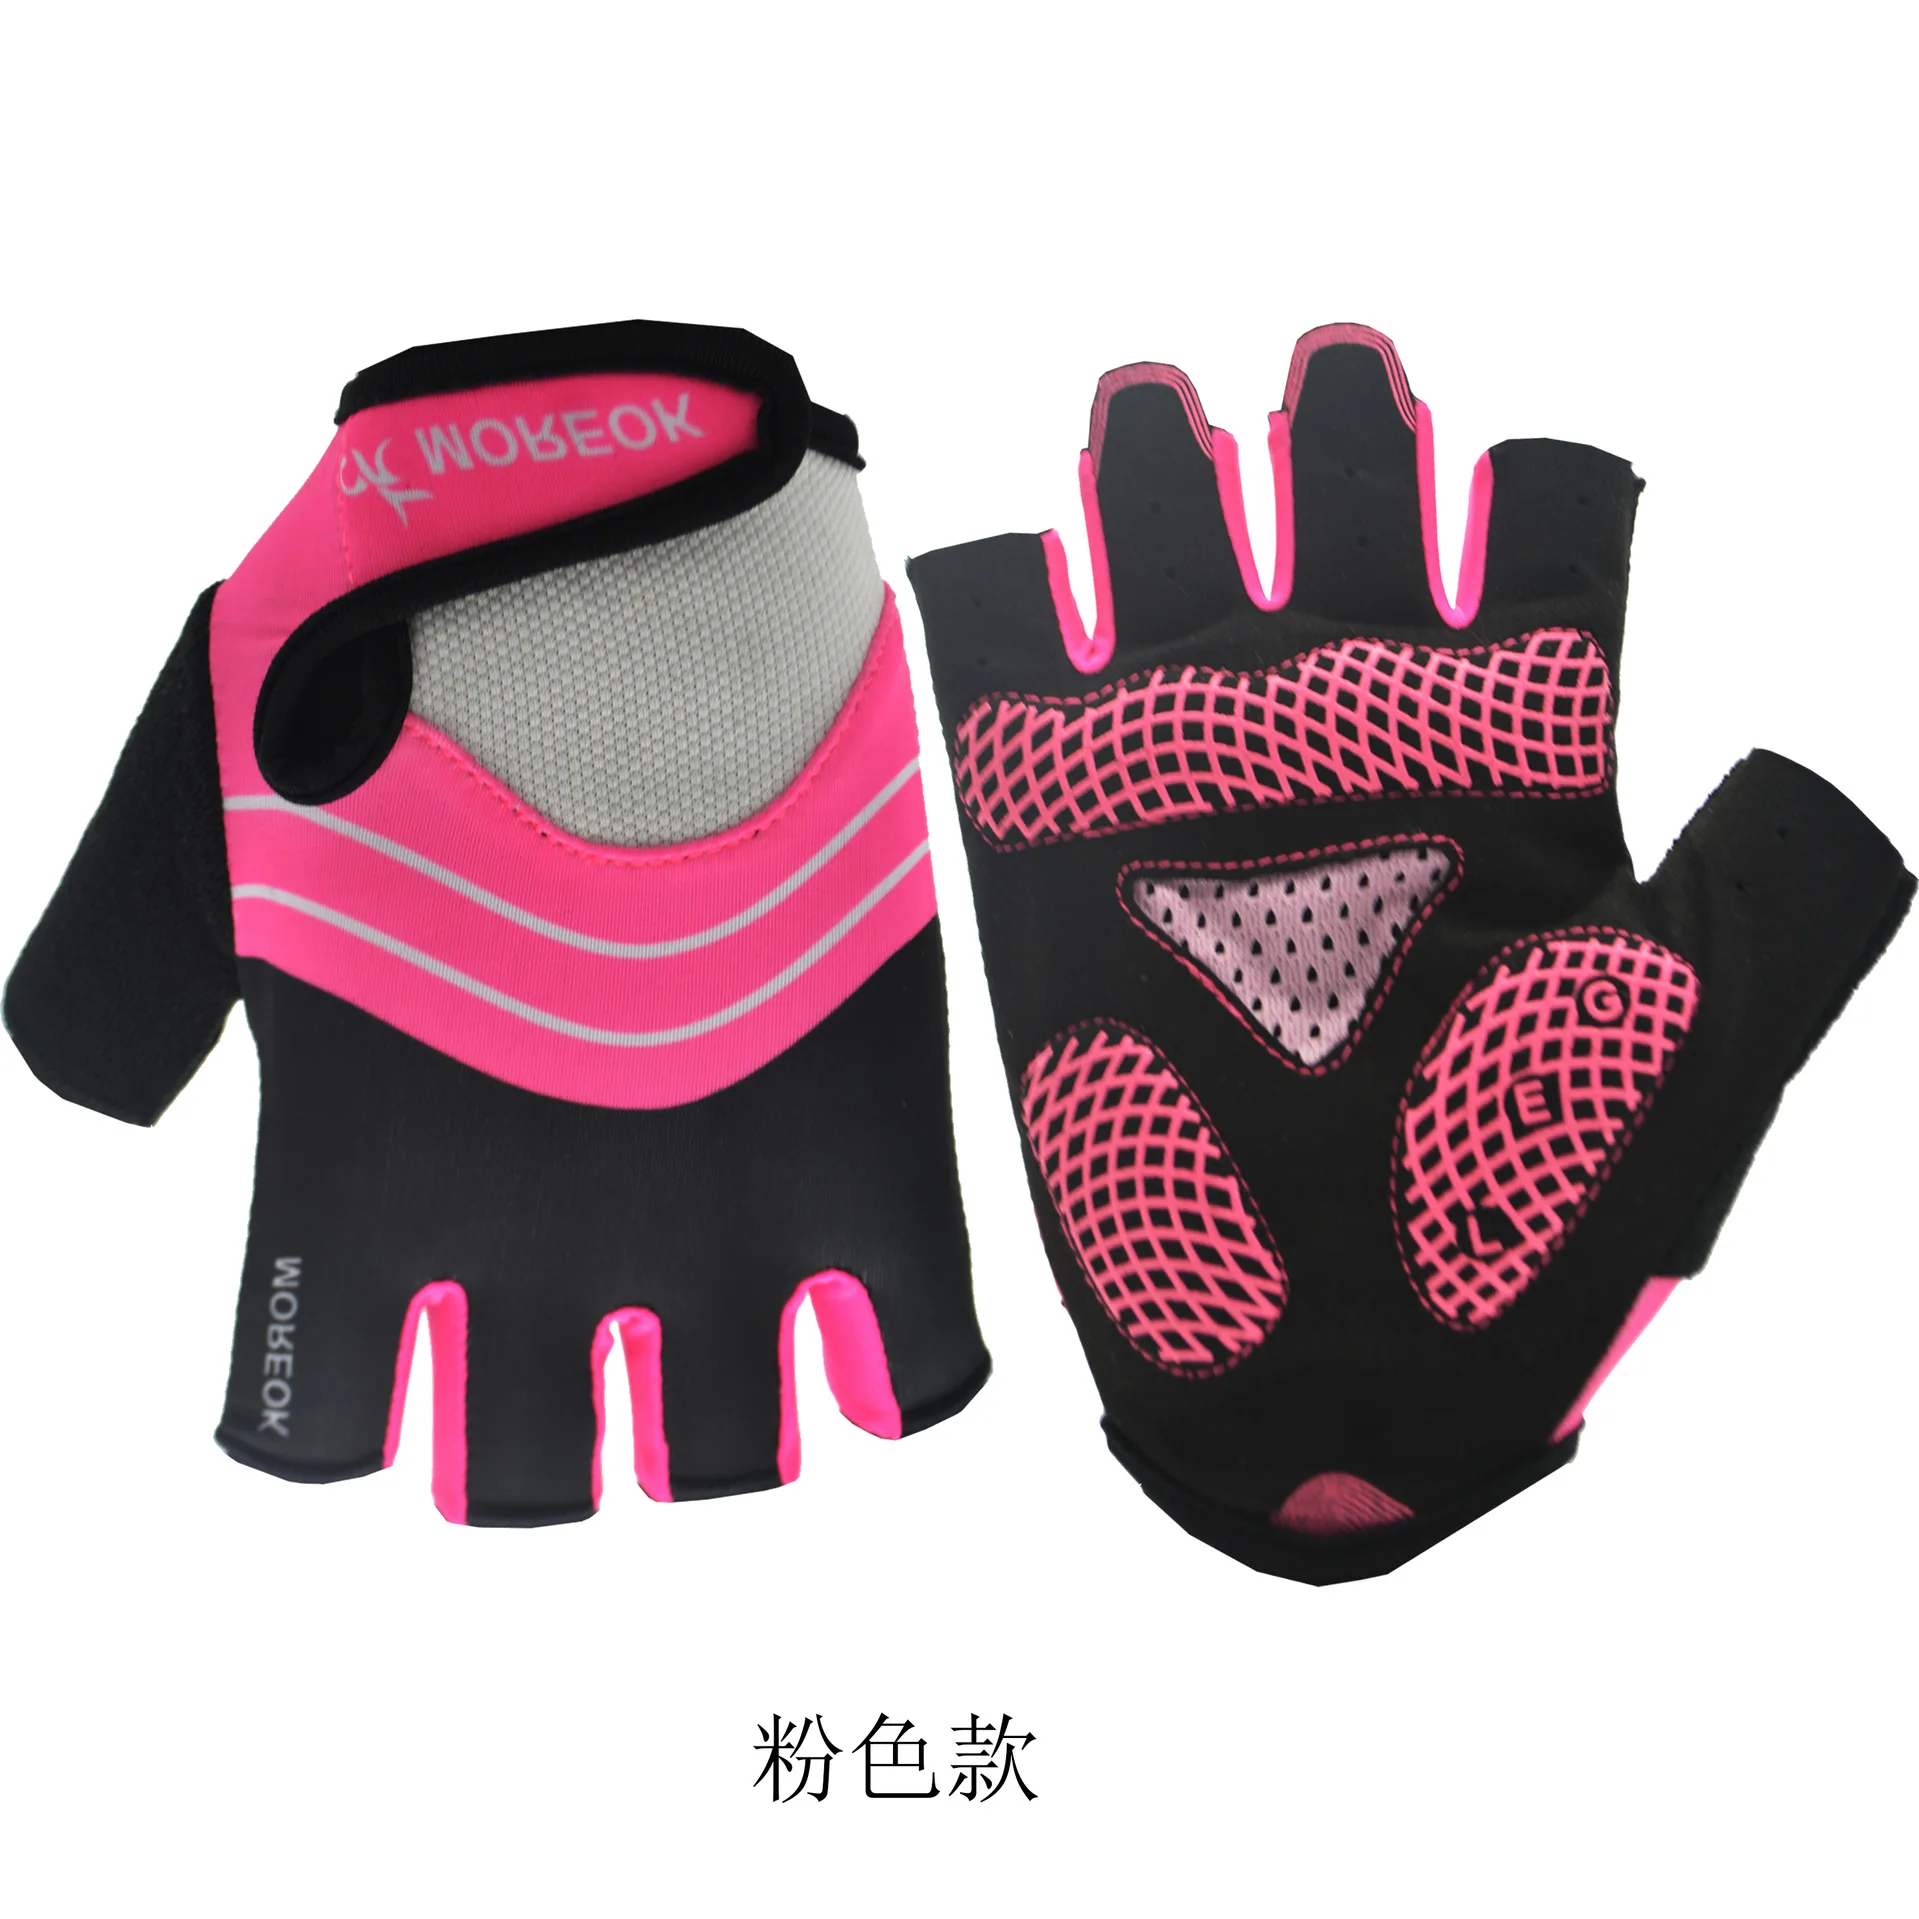 Для езды на горном велосипеде, миди демпфирования Силиконовое противоскользящее покрытие на открытом воздухе спортивные перчатки с открытыми пальцами - Цвет: Розовый